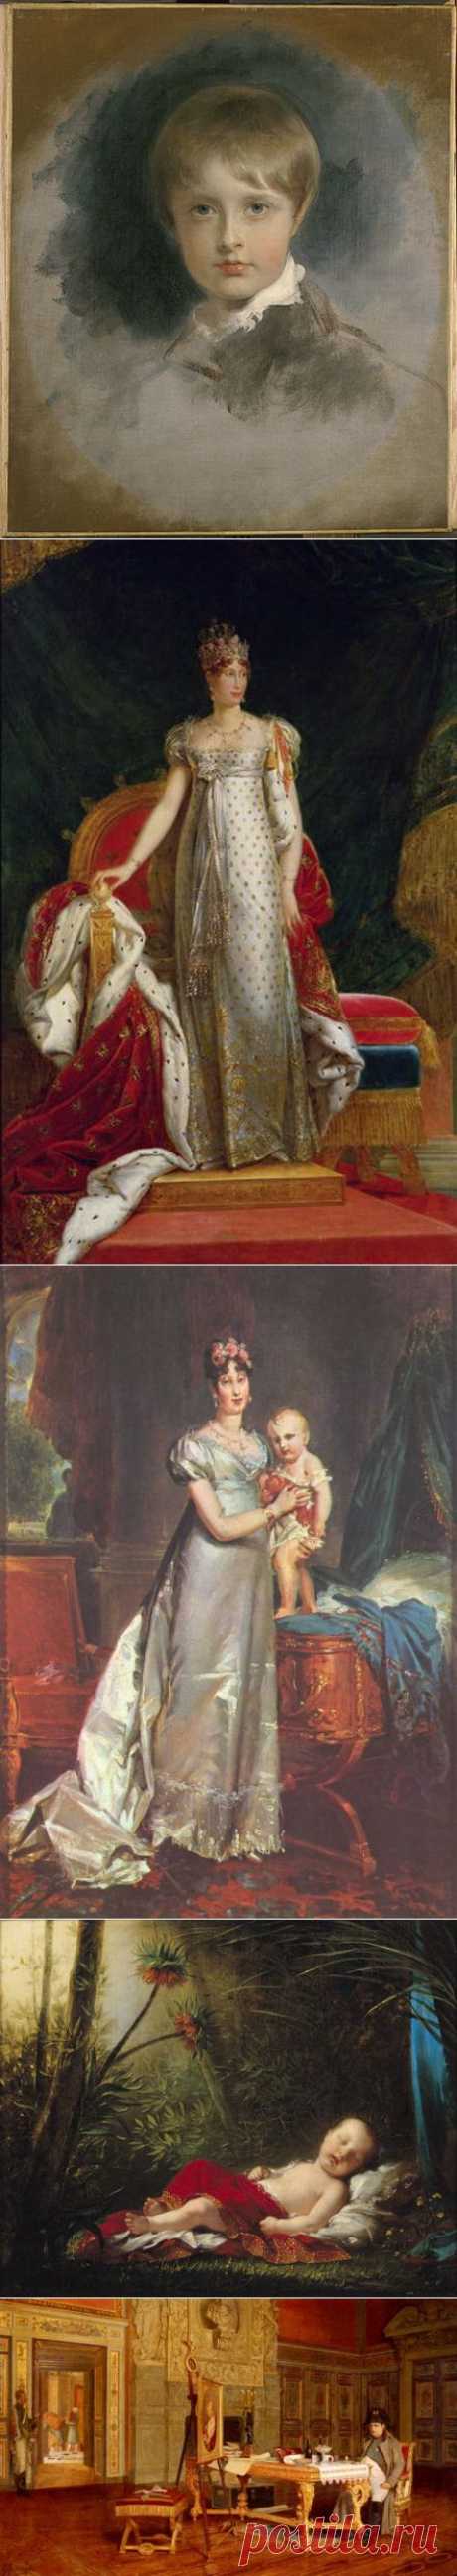 Франц, герцог Рейхштадский. Он же - Наполеон Франсуа Жозеф Шарль Бонапарт, король Римский. Он же - Наполеон II. Он же – единственный законный ребенок и наследник императора Наполеона, вошедший в историю под прозвищем «Орленок» (L’Aiglon).